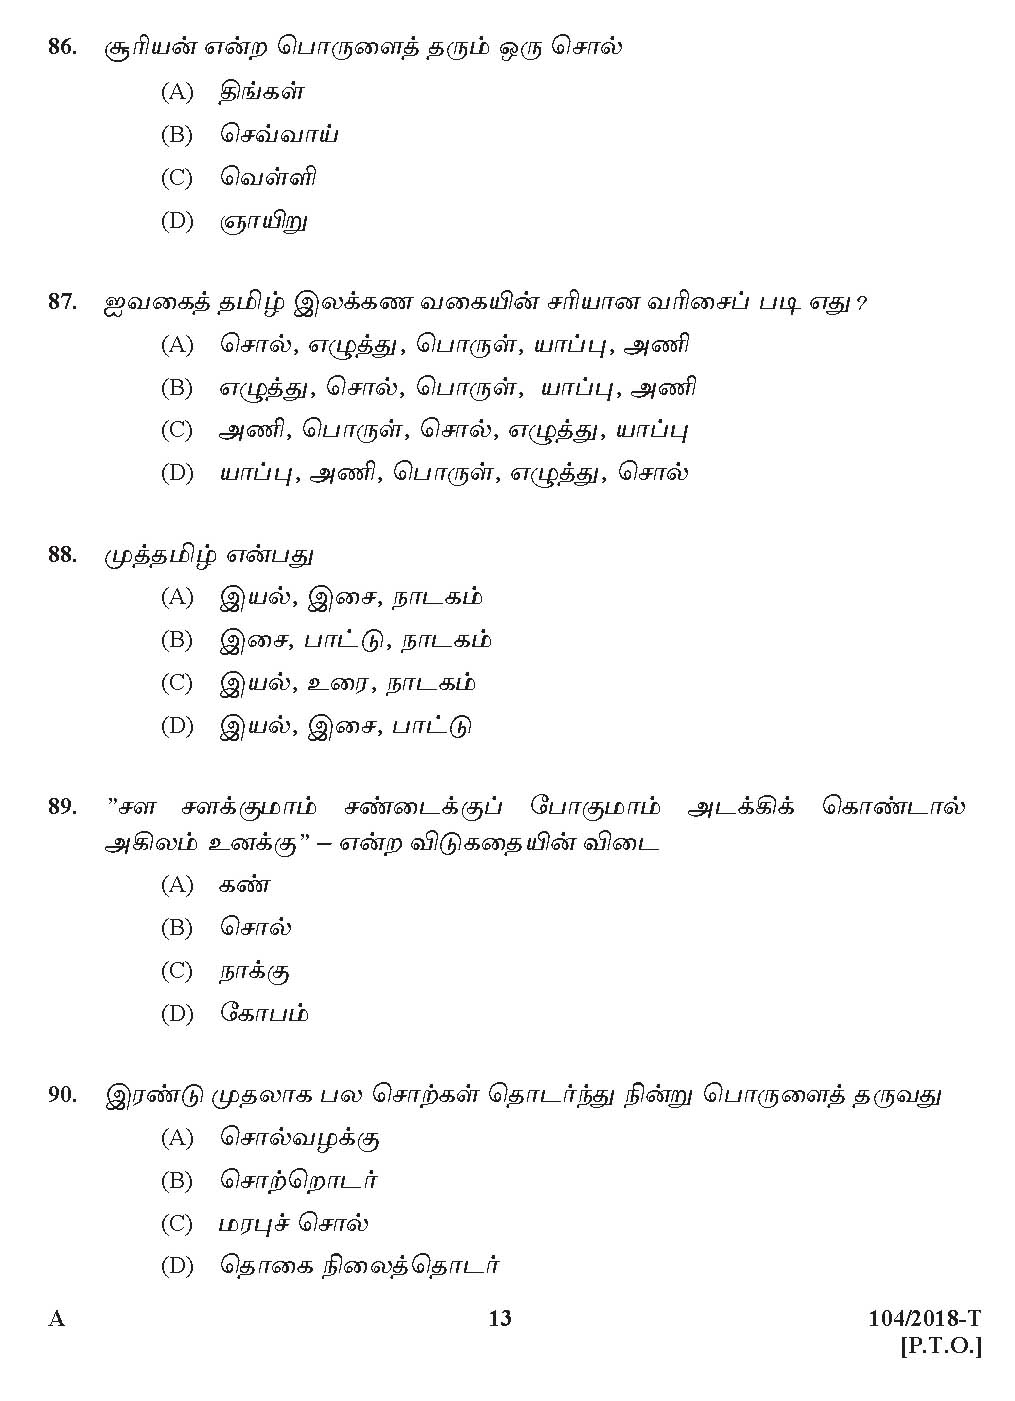 KPSC Assistant Auditor Tamil Exam 2018 Code 1042018 12